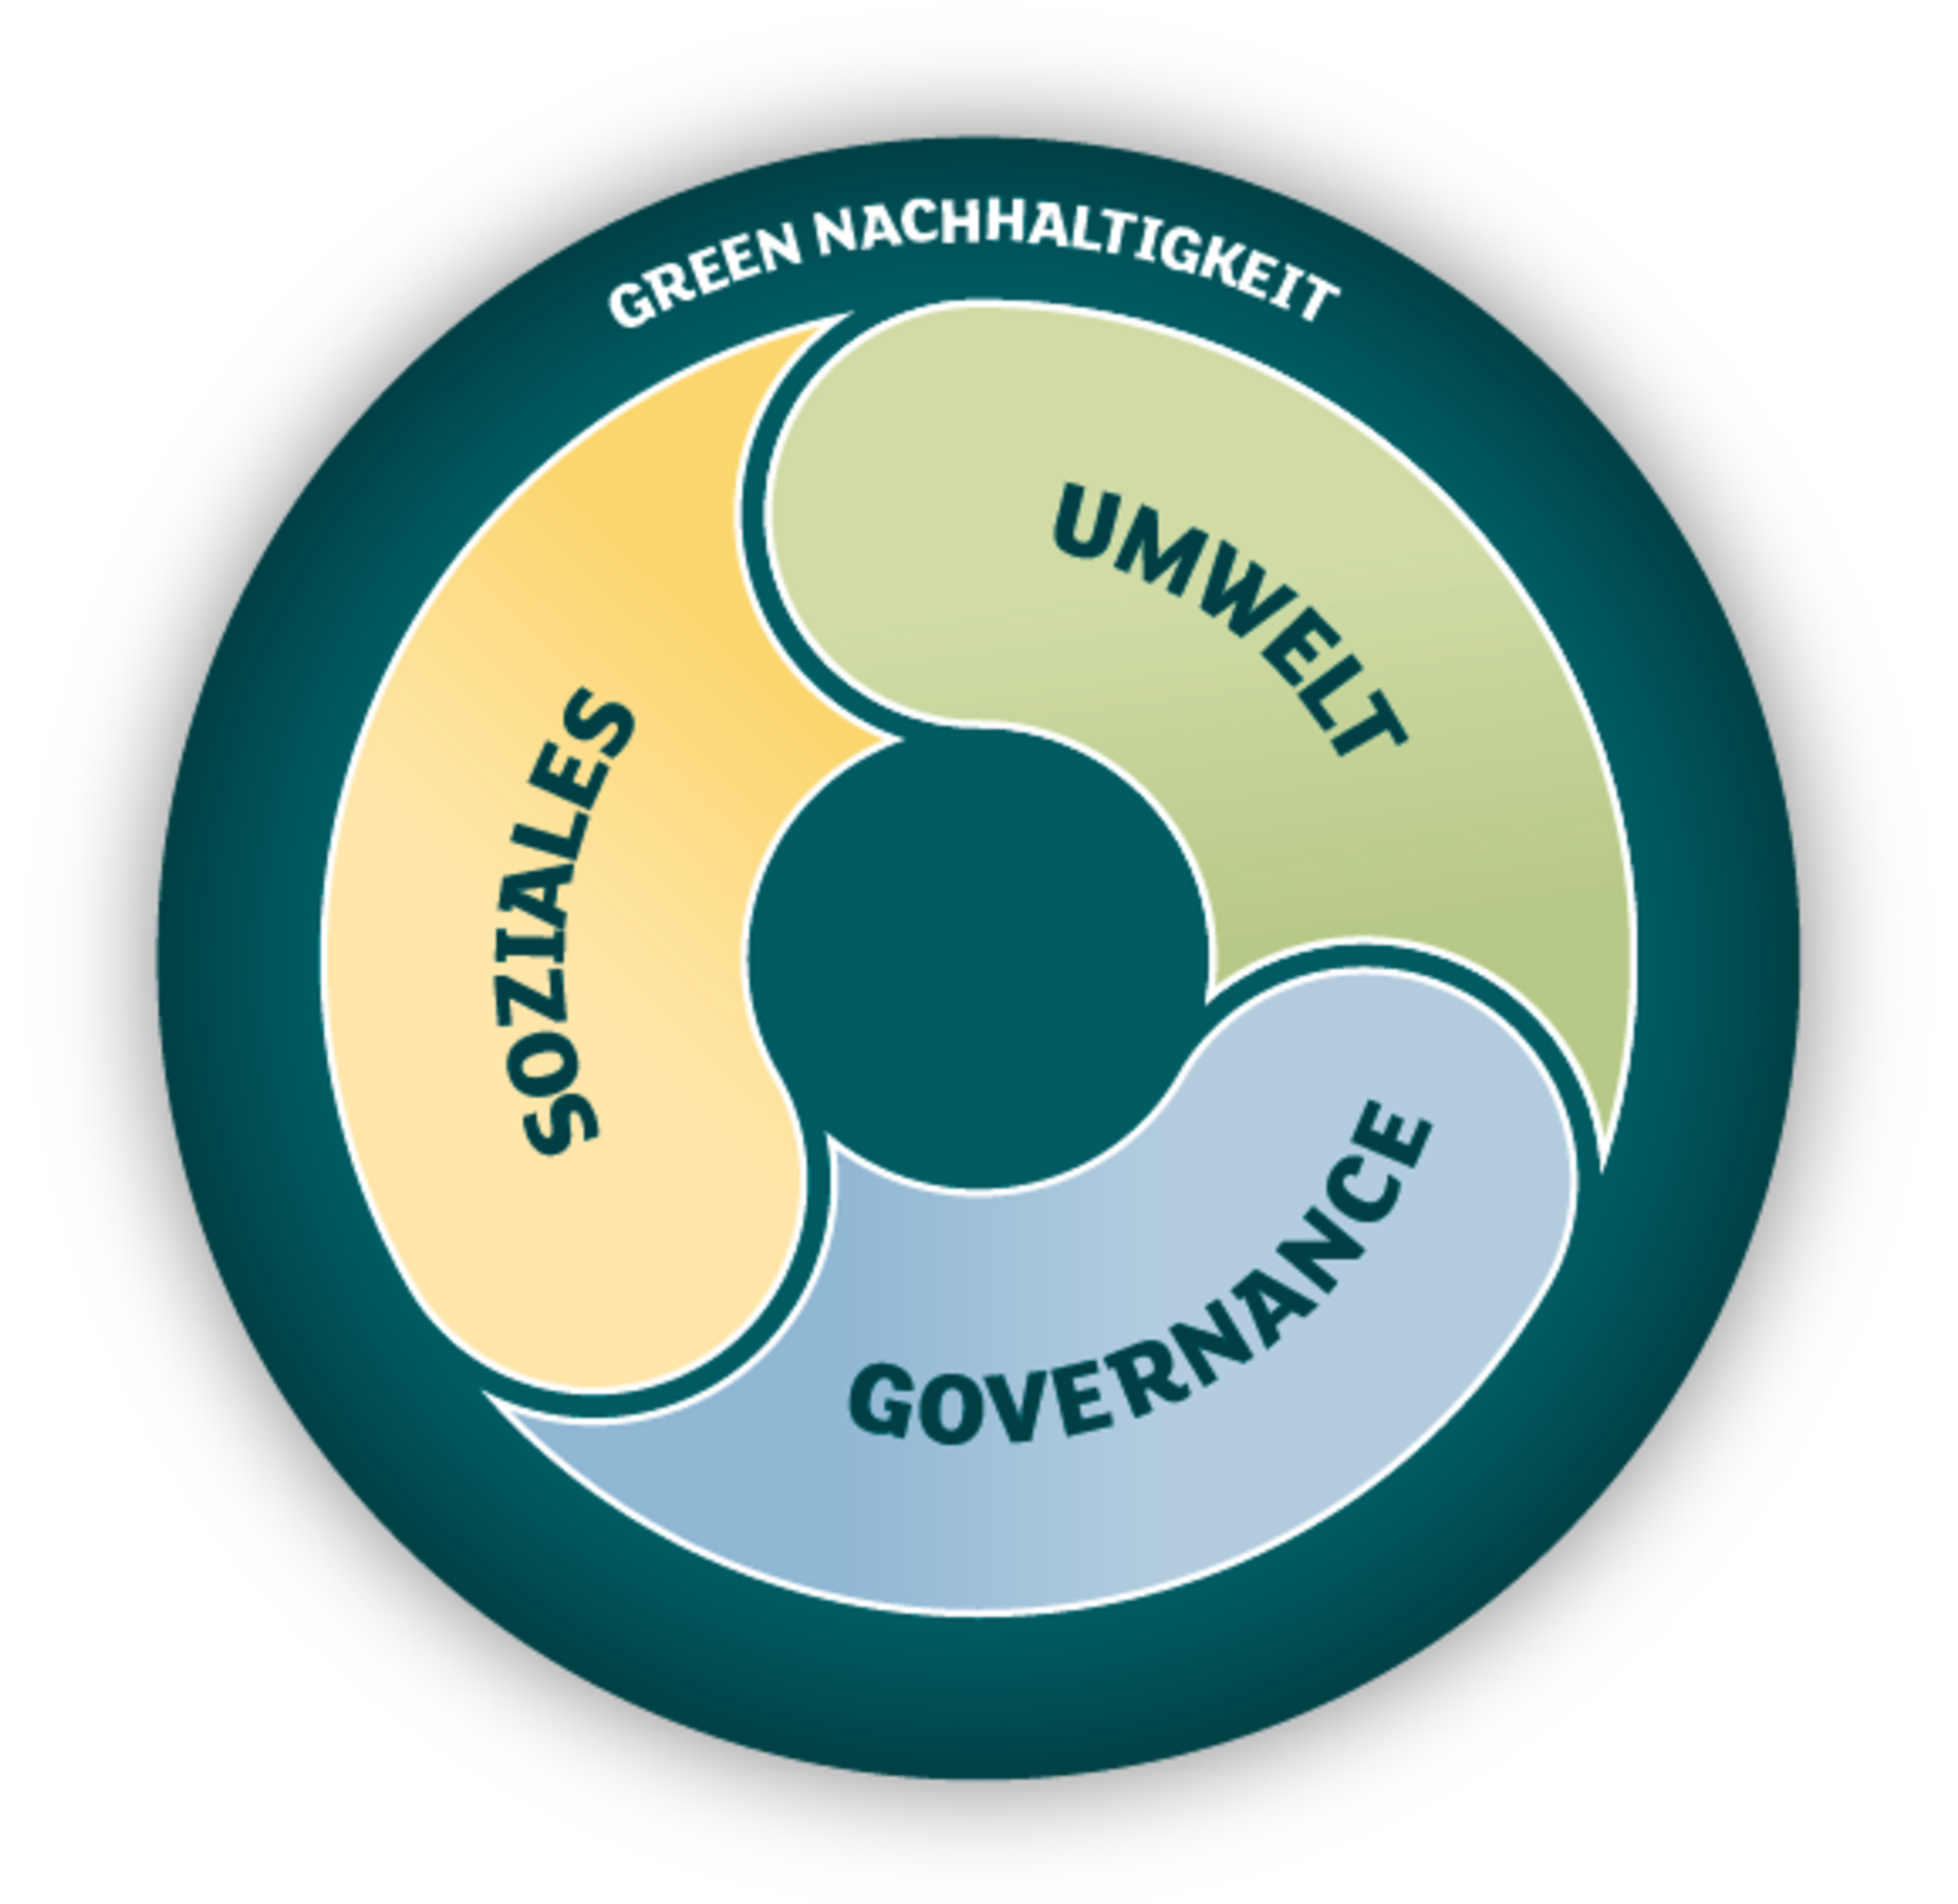 Kreis beschriftet mit Nachhaltigkeit bei Green, darin die drei gleichgewichteten Bereiche Soziales, Umwelt und Governance.